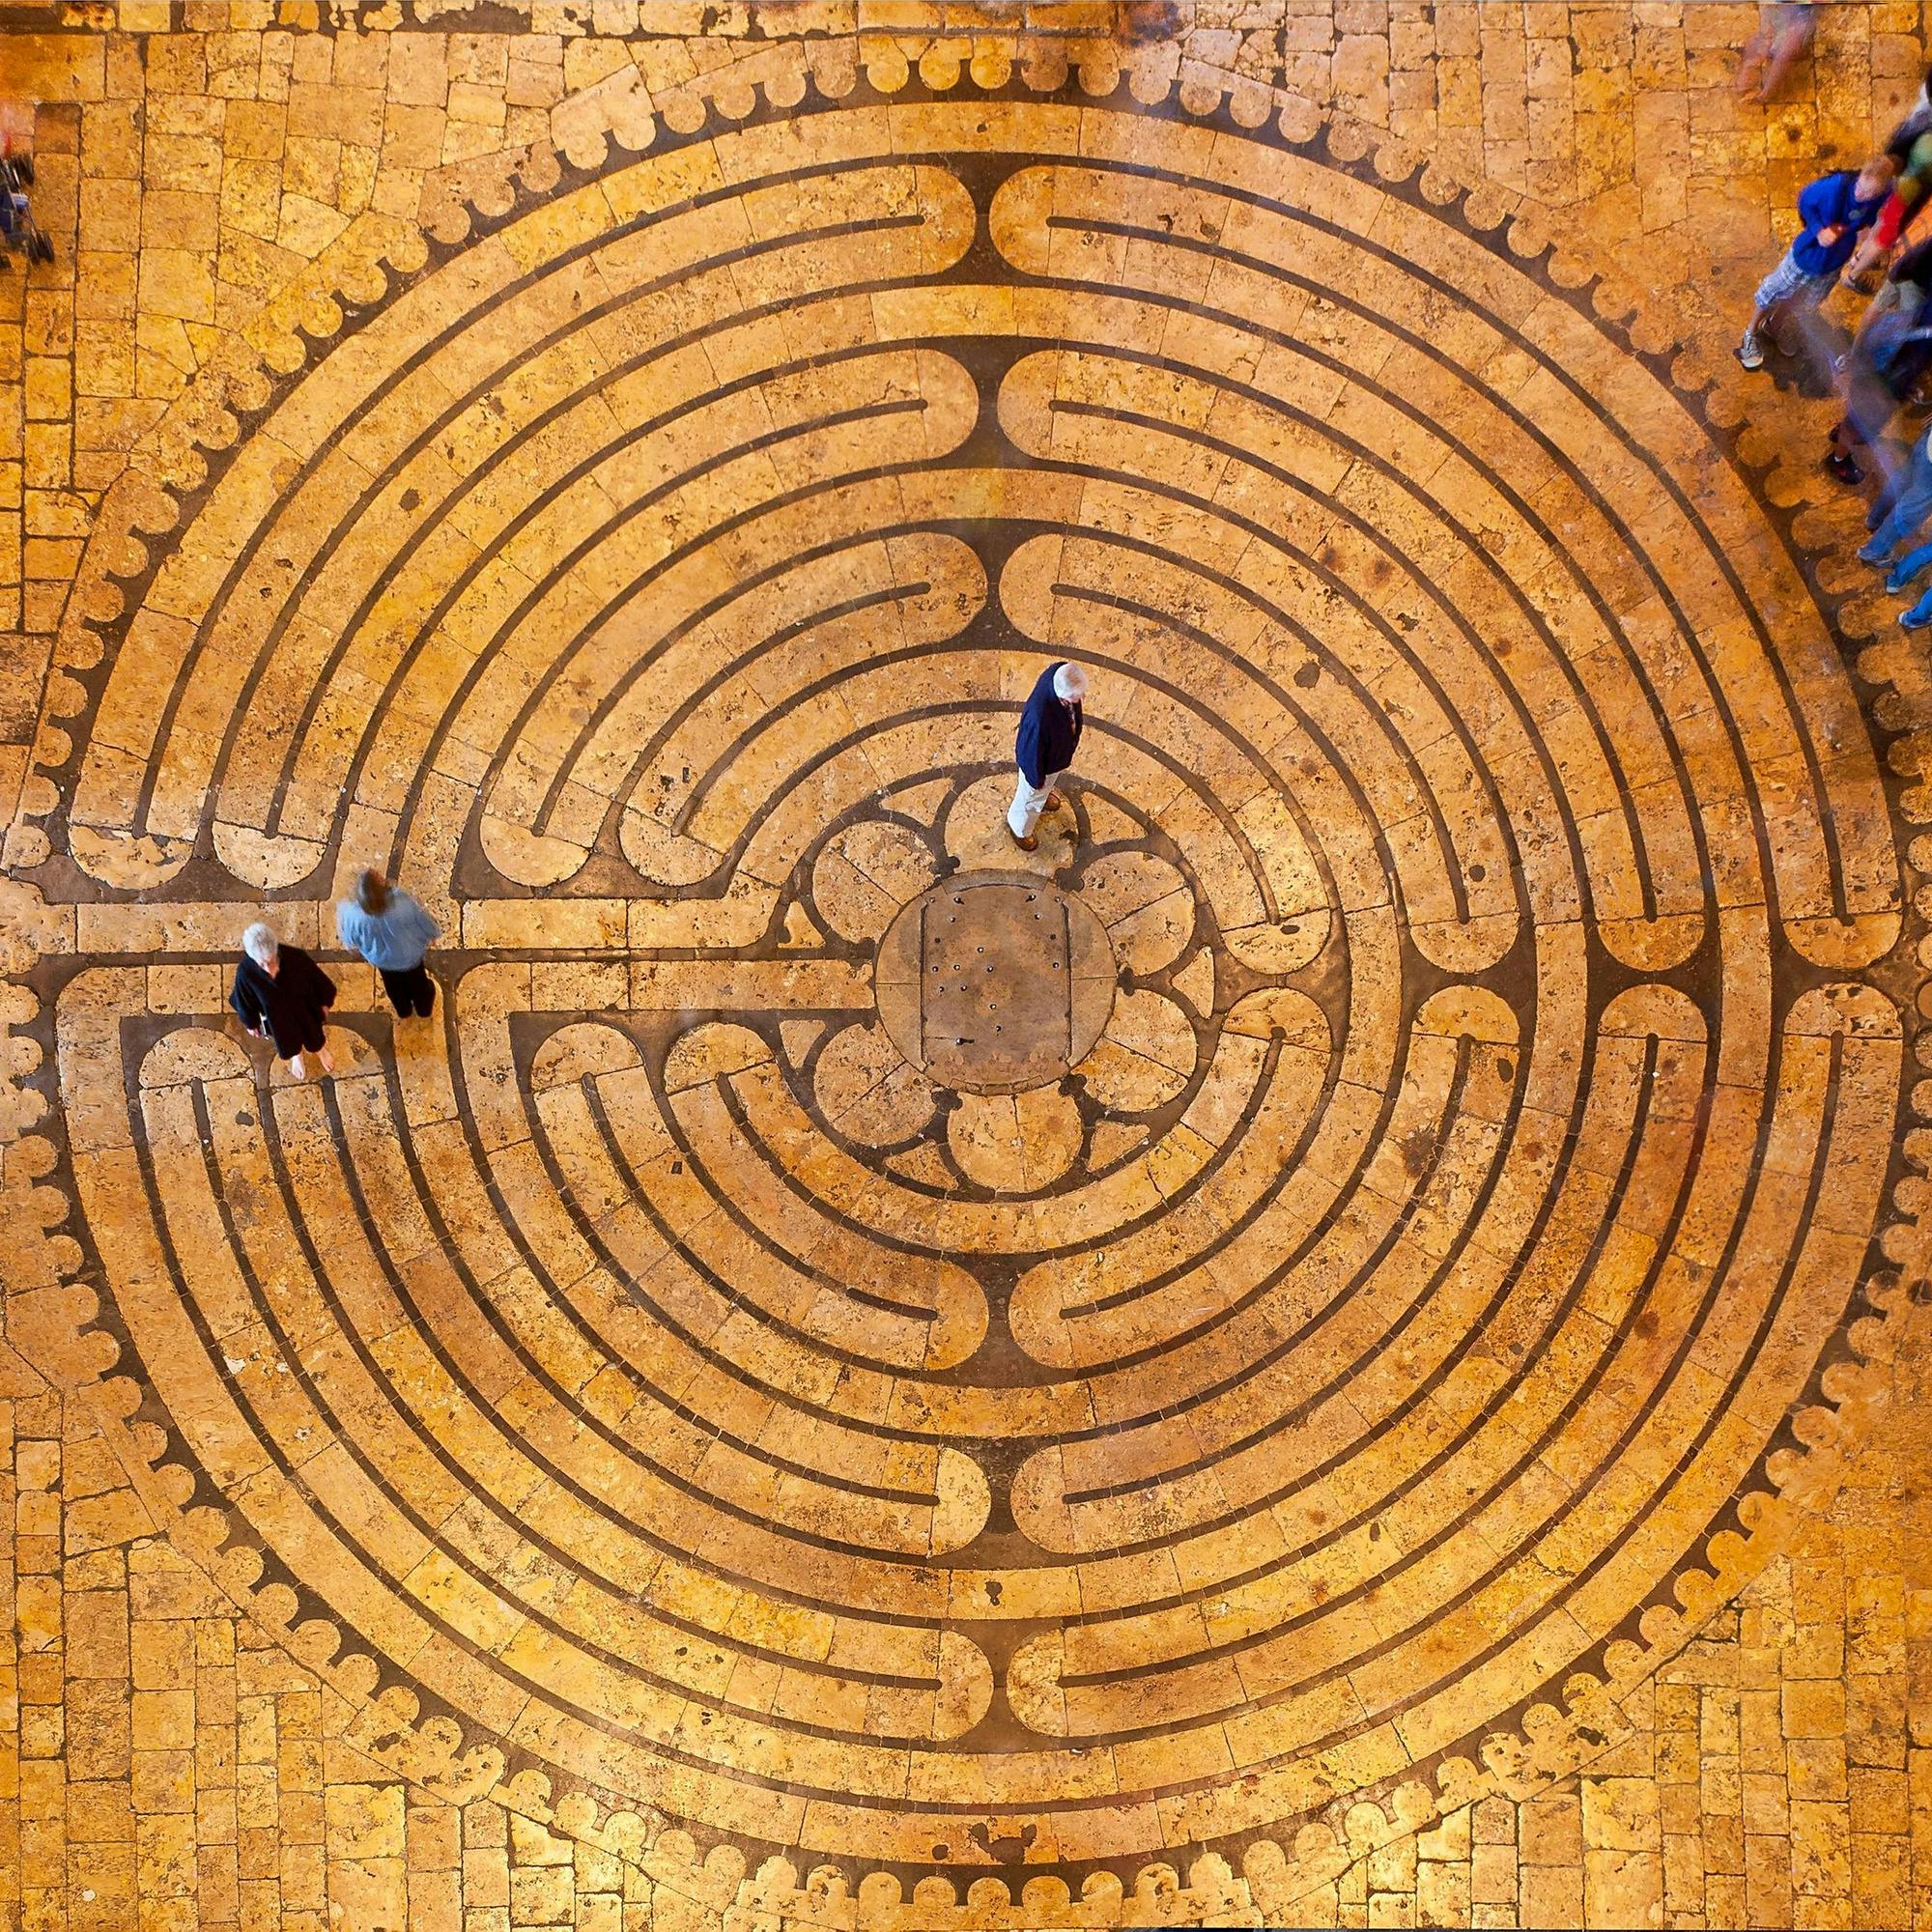 Cathédrale de Chartres Labyrinth, Chartres, France